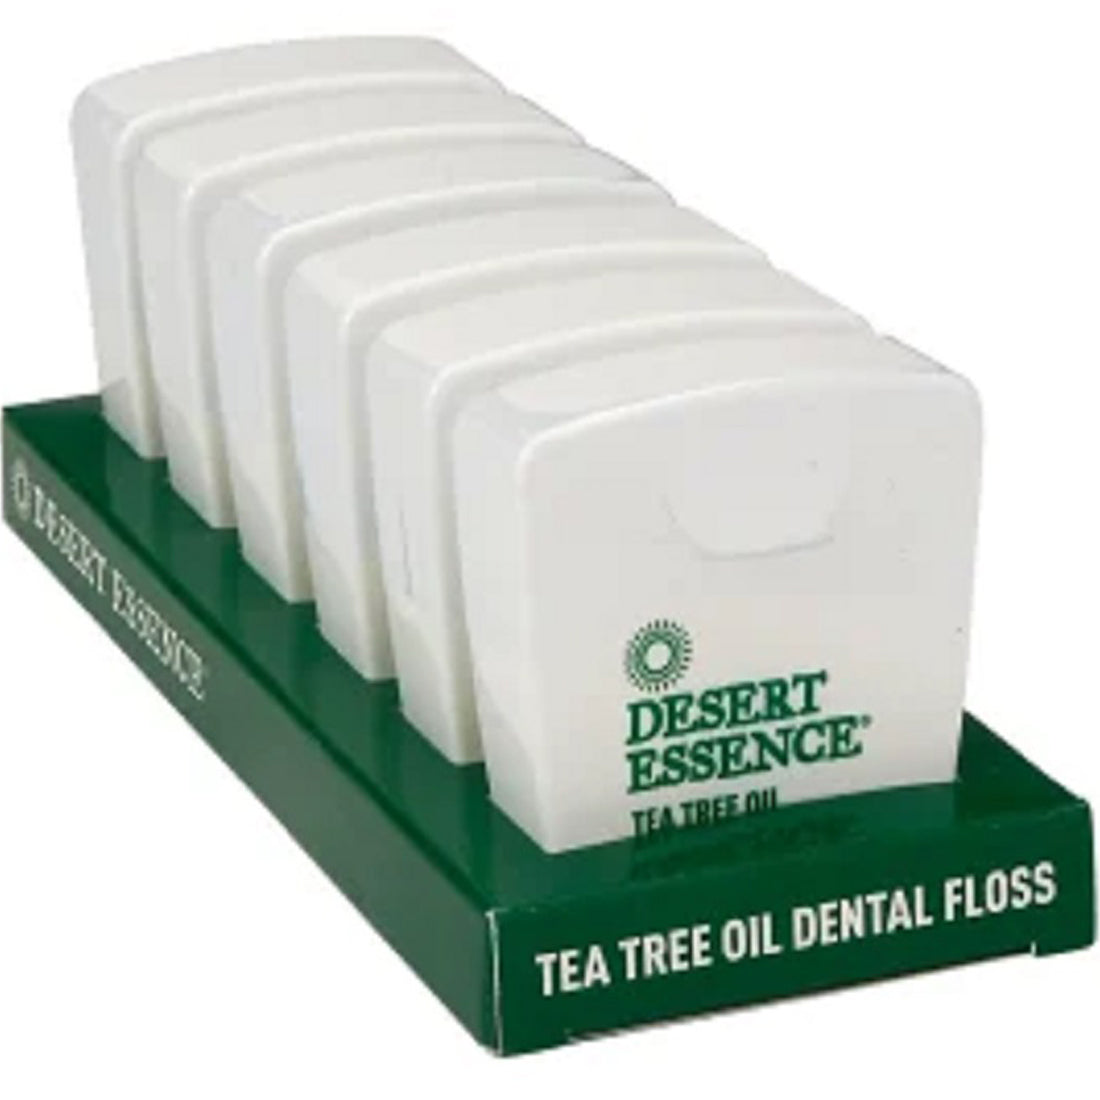 Desert Essence Tea Tree Oil Dental Floss, Case of 6 x 46m